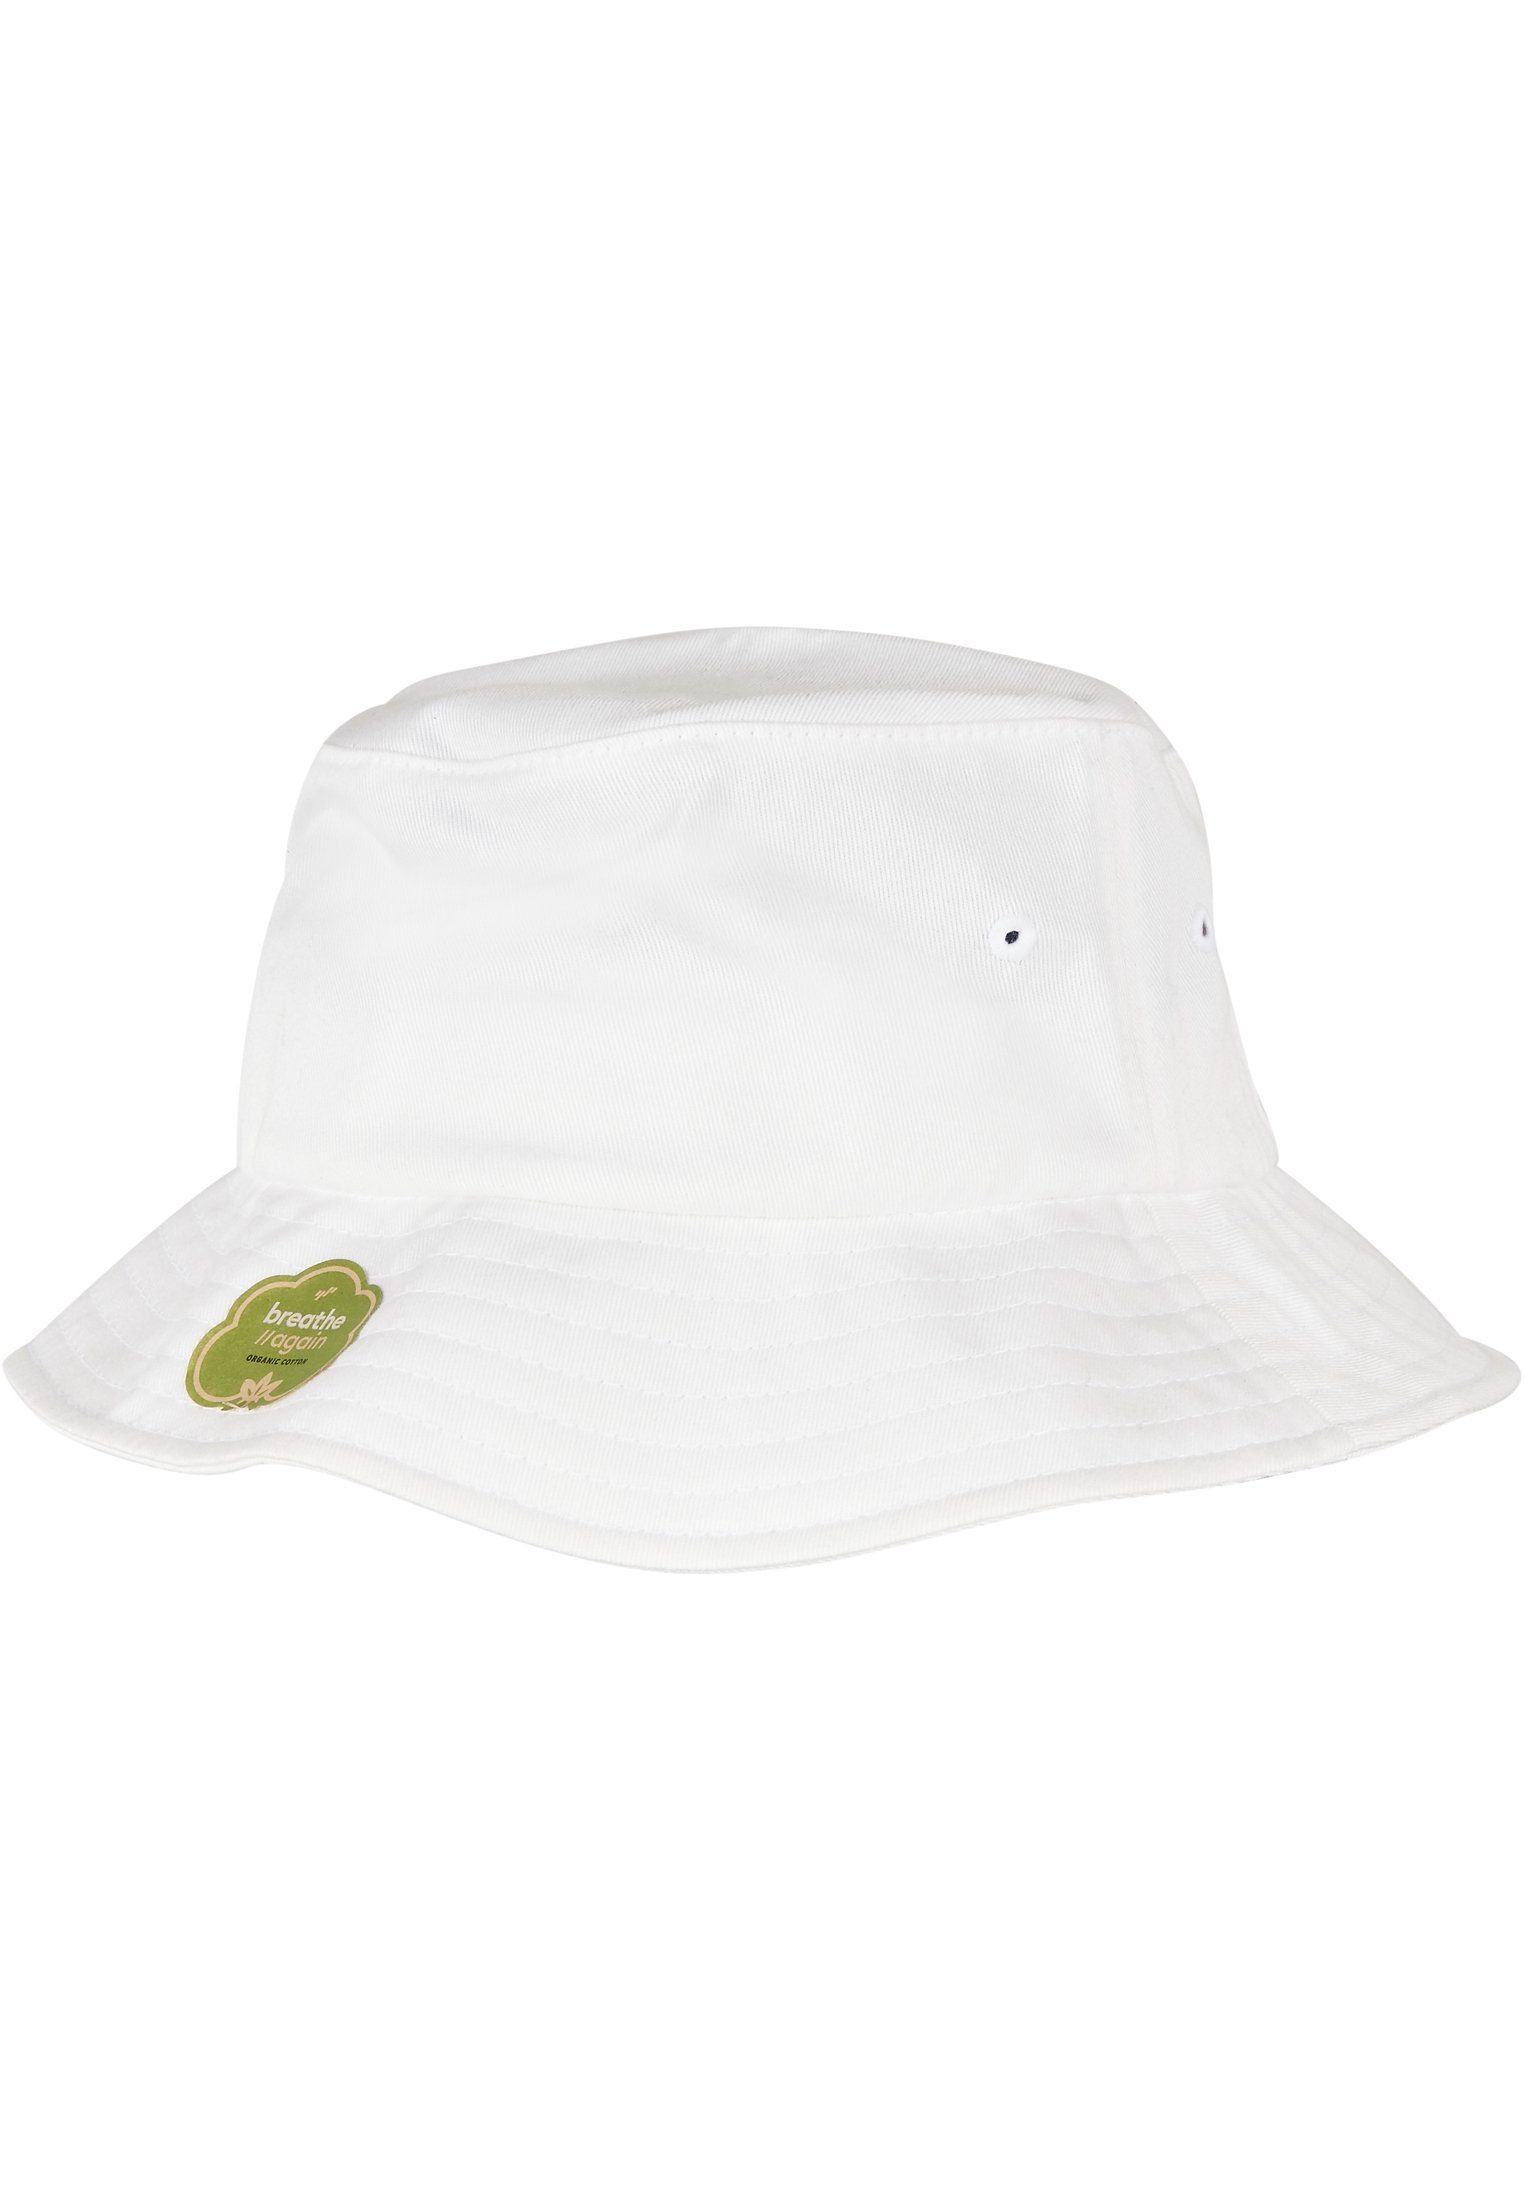 Flexfit Flex Cap Accessoires Organic white Cotton Hat Bucket